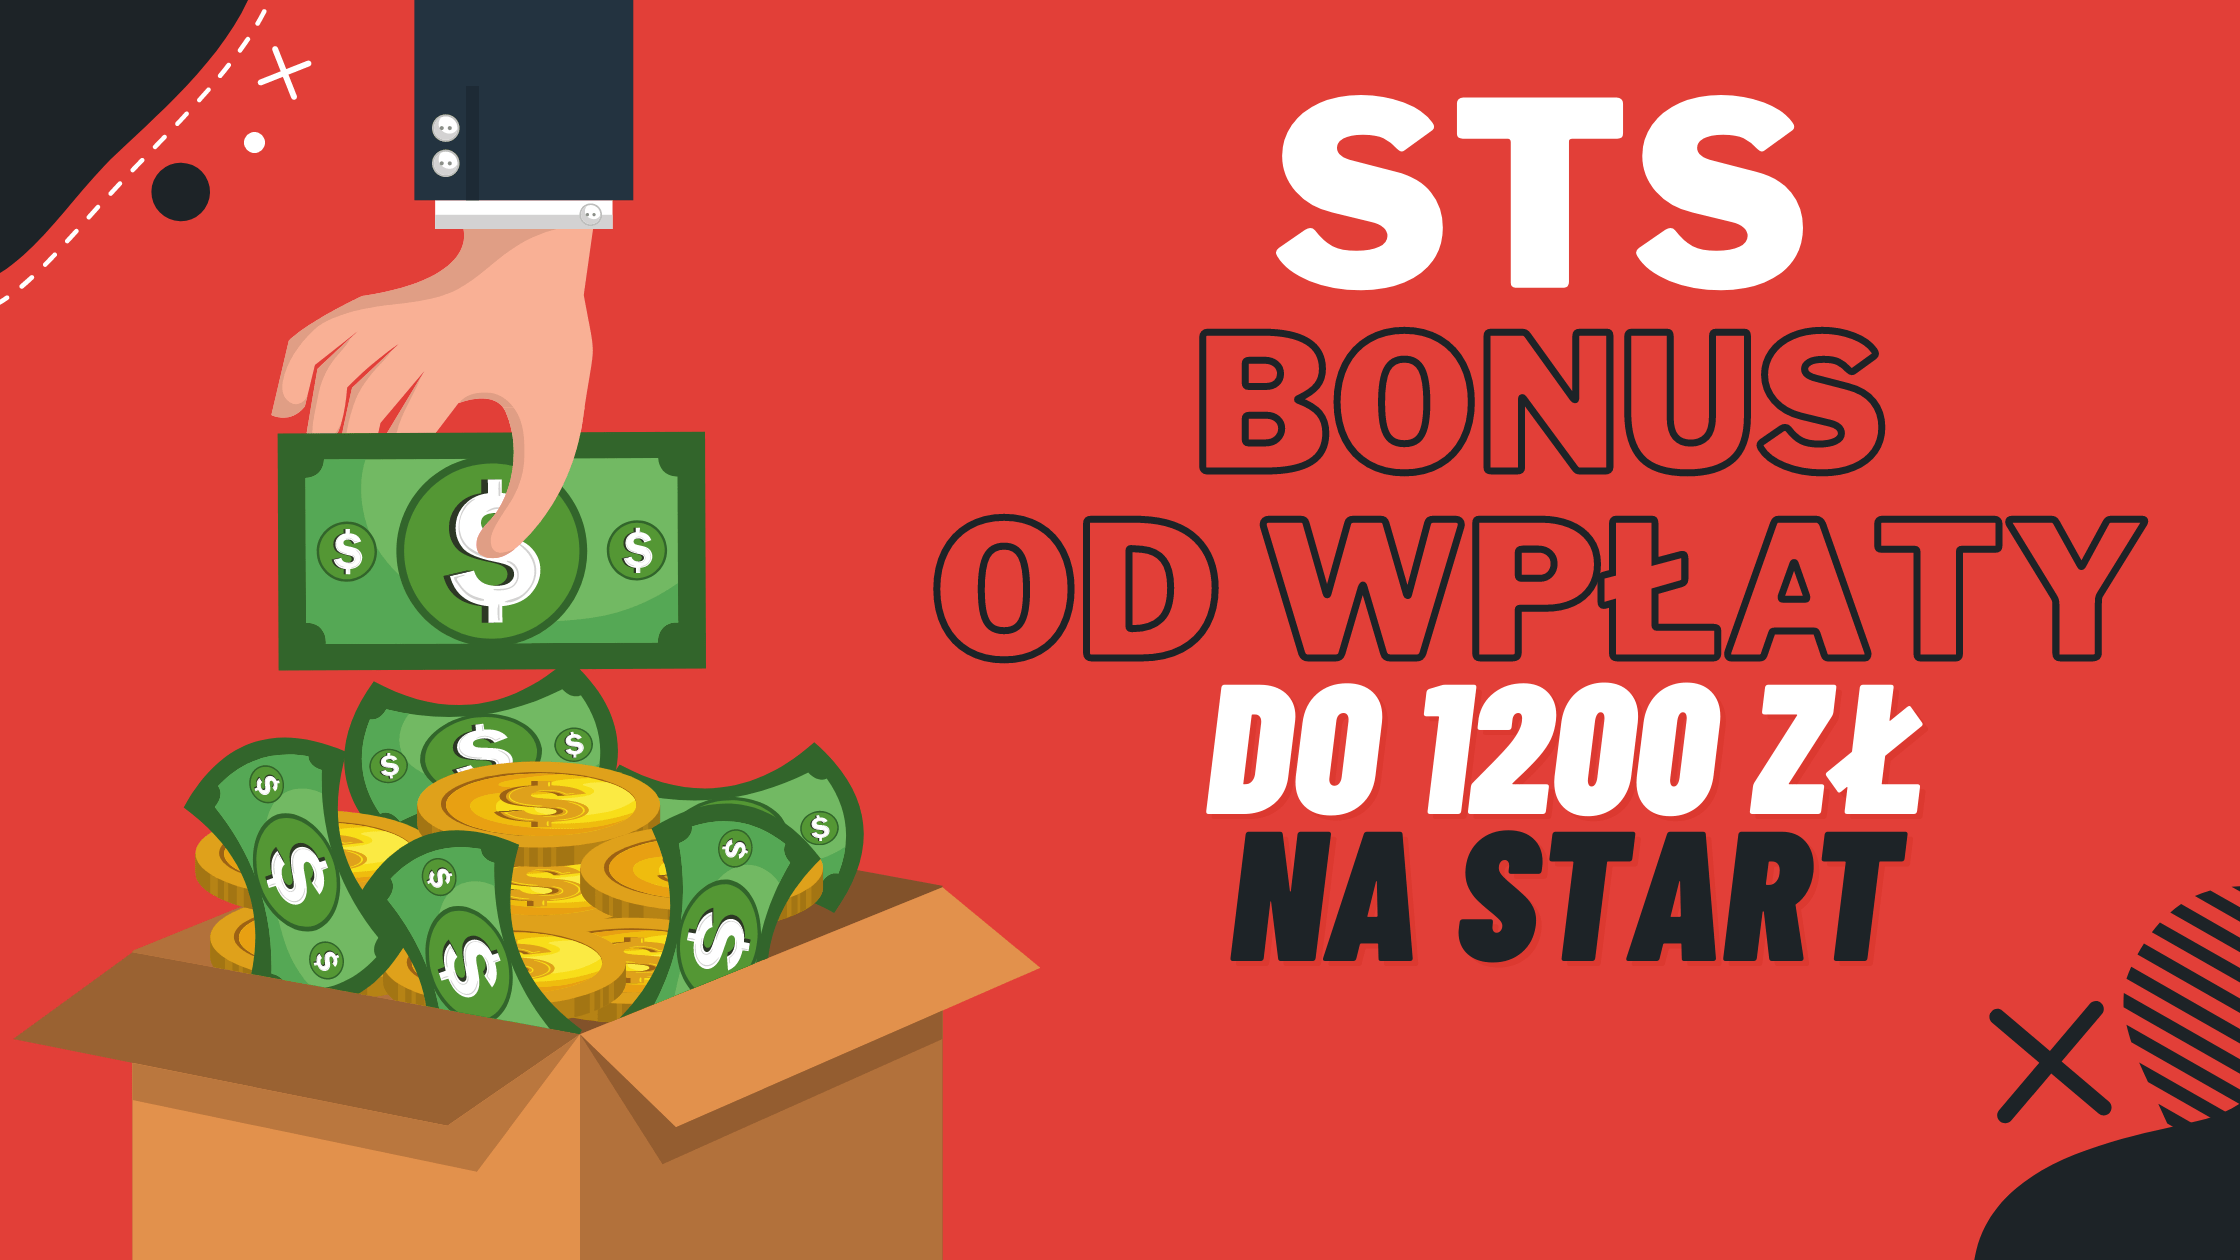 STS bonus od wpłaty do 1200 zł na start